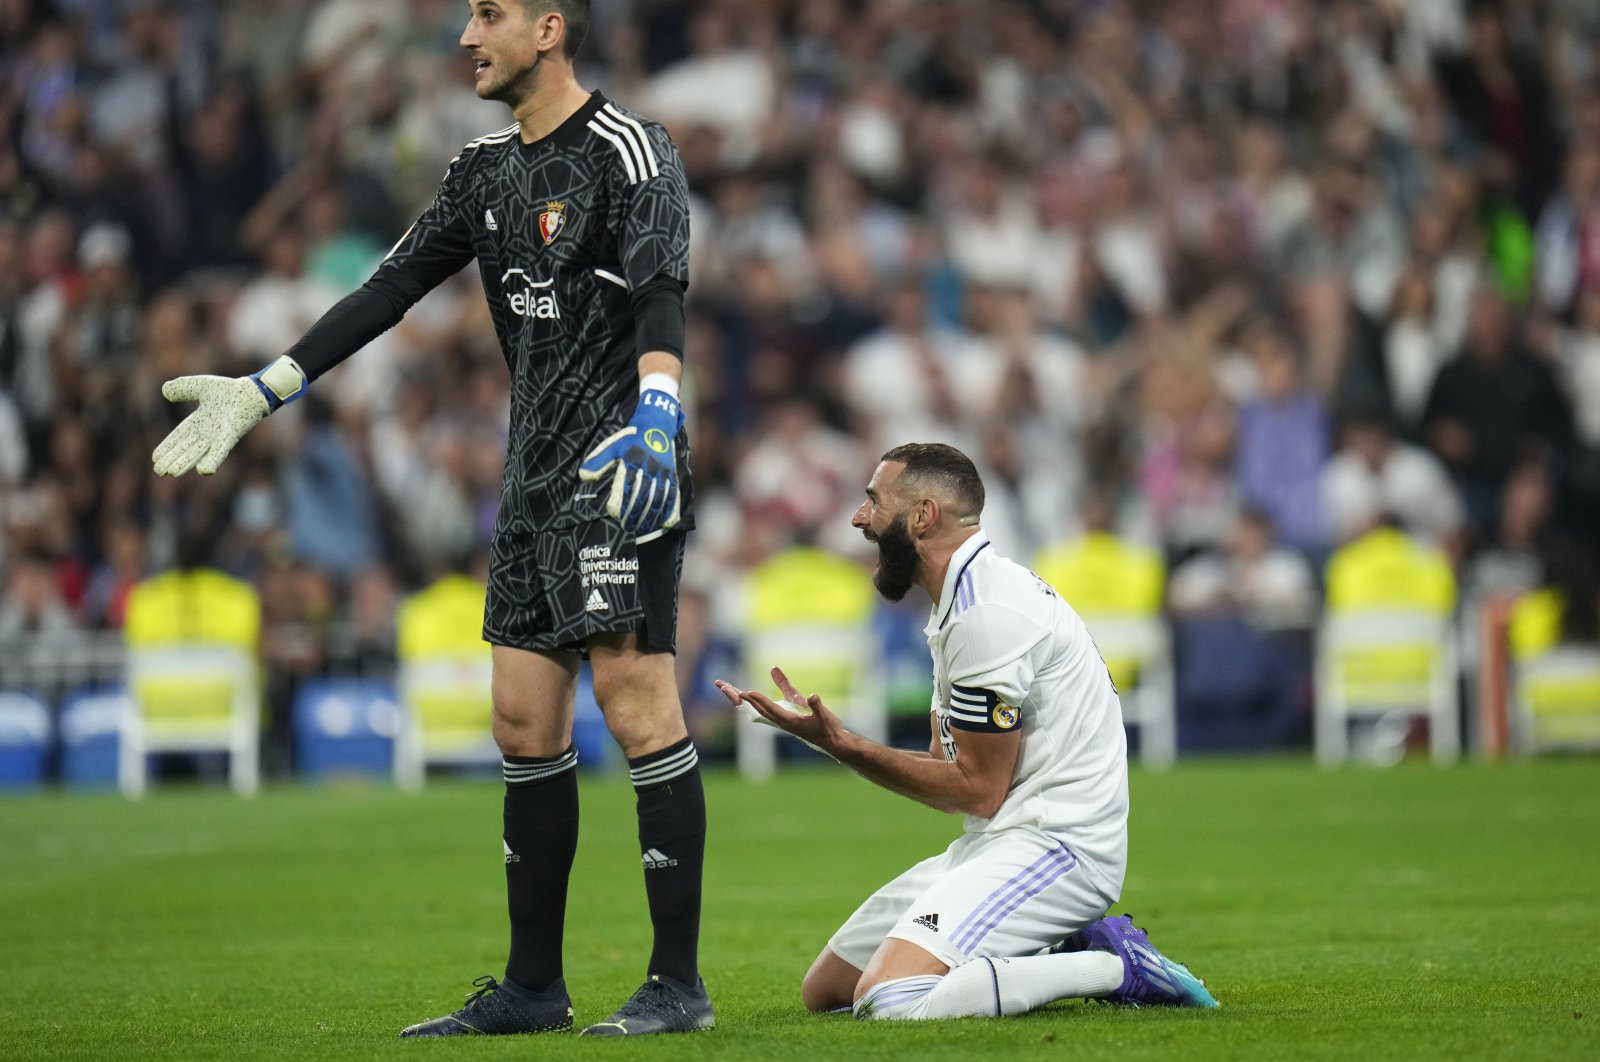 Lari tanpa cela Madrid berakhir saat Benzema gagal mengeksekusi tendangan penalti